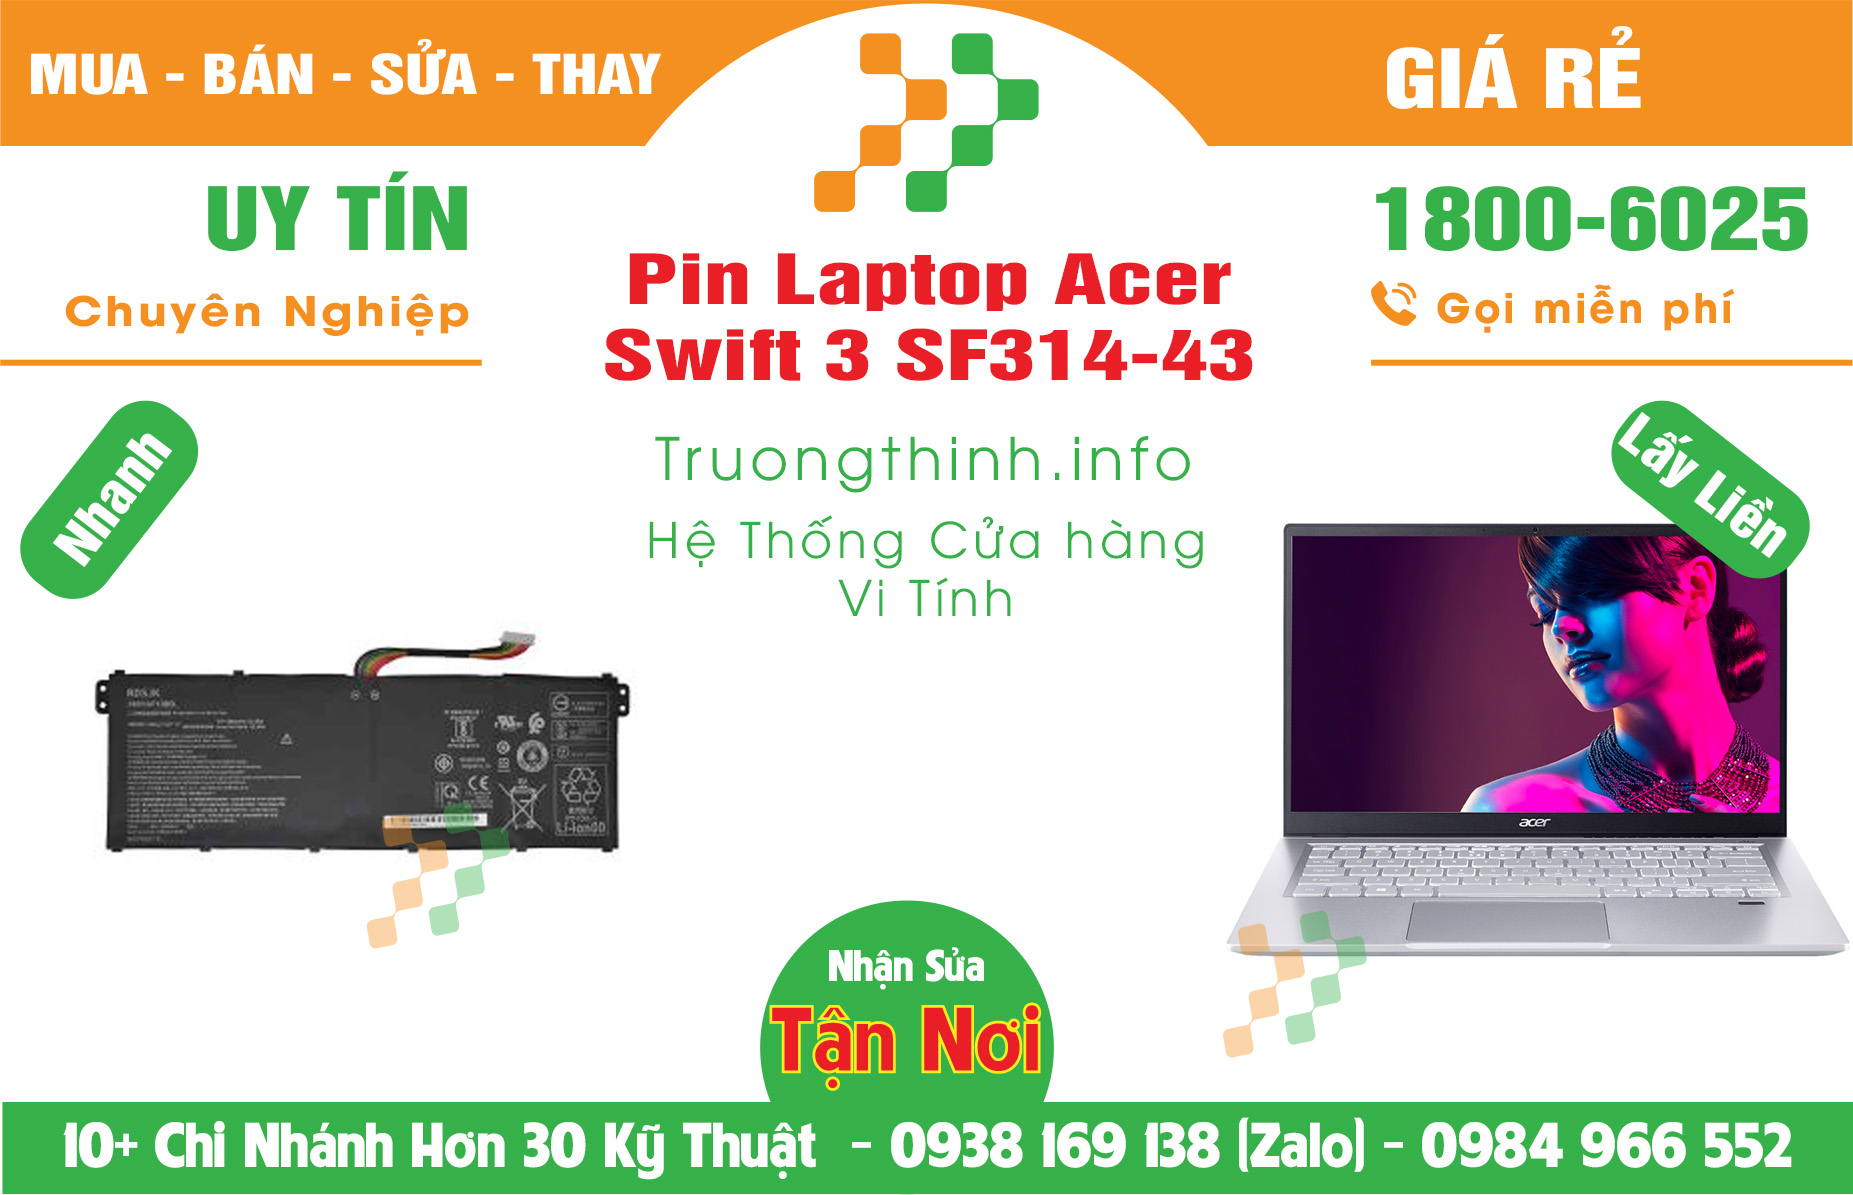 Mua Bán Pin Acer Swift 3 SF314-43 Giá Rẻ | Máy Tính Trường Thịnh Giá Rẻ